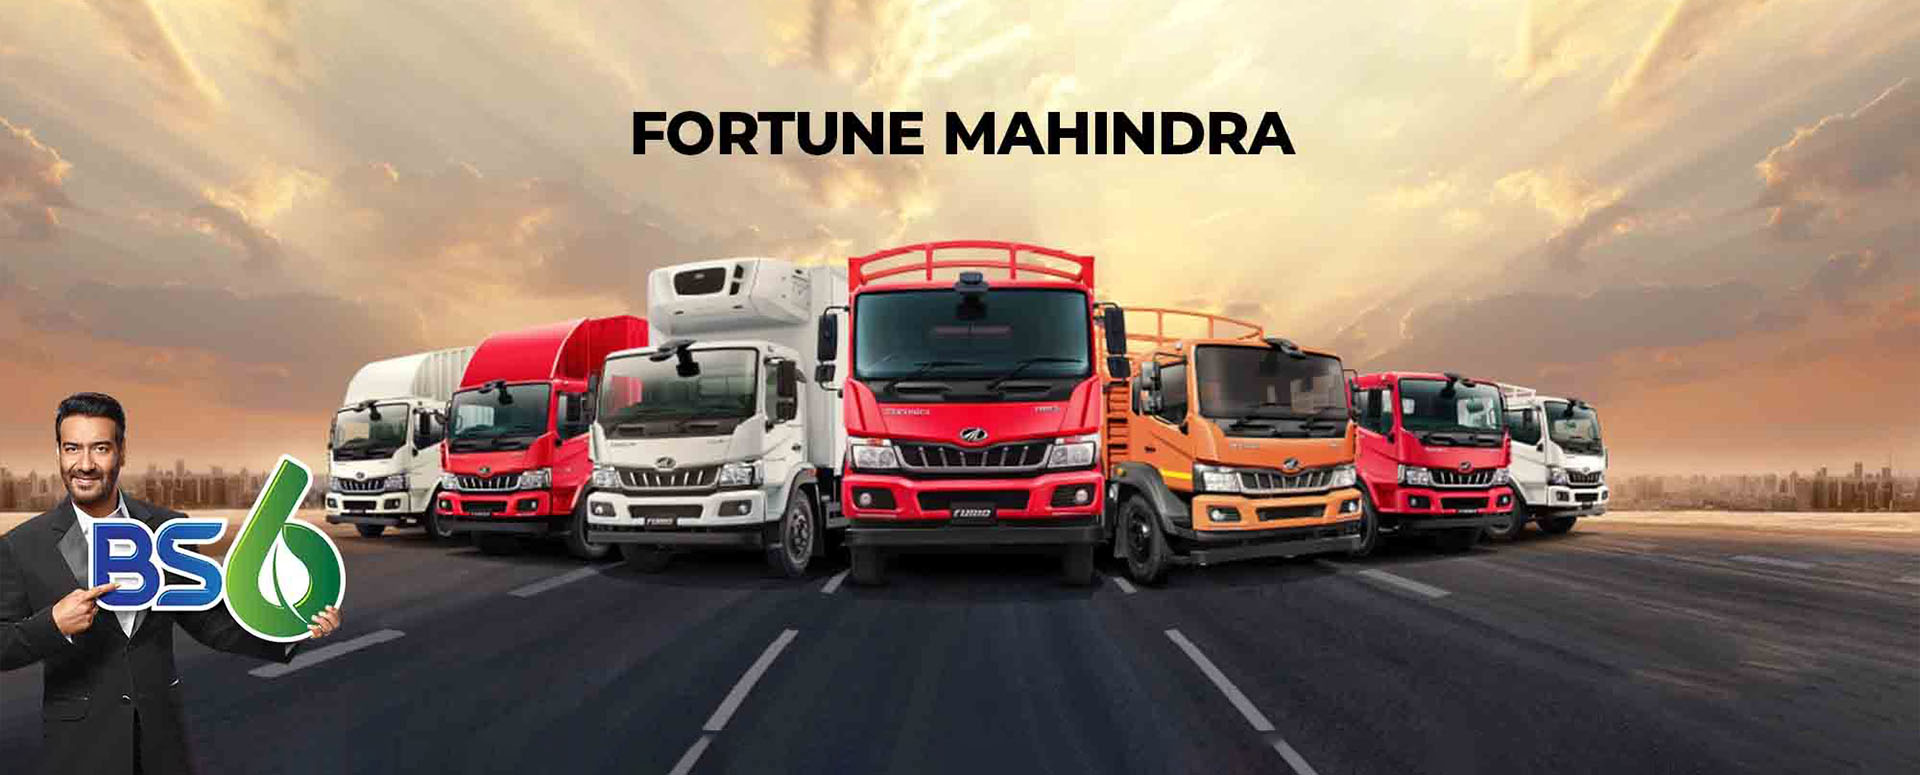 Fortune Mahindra